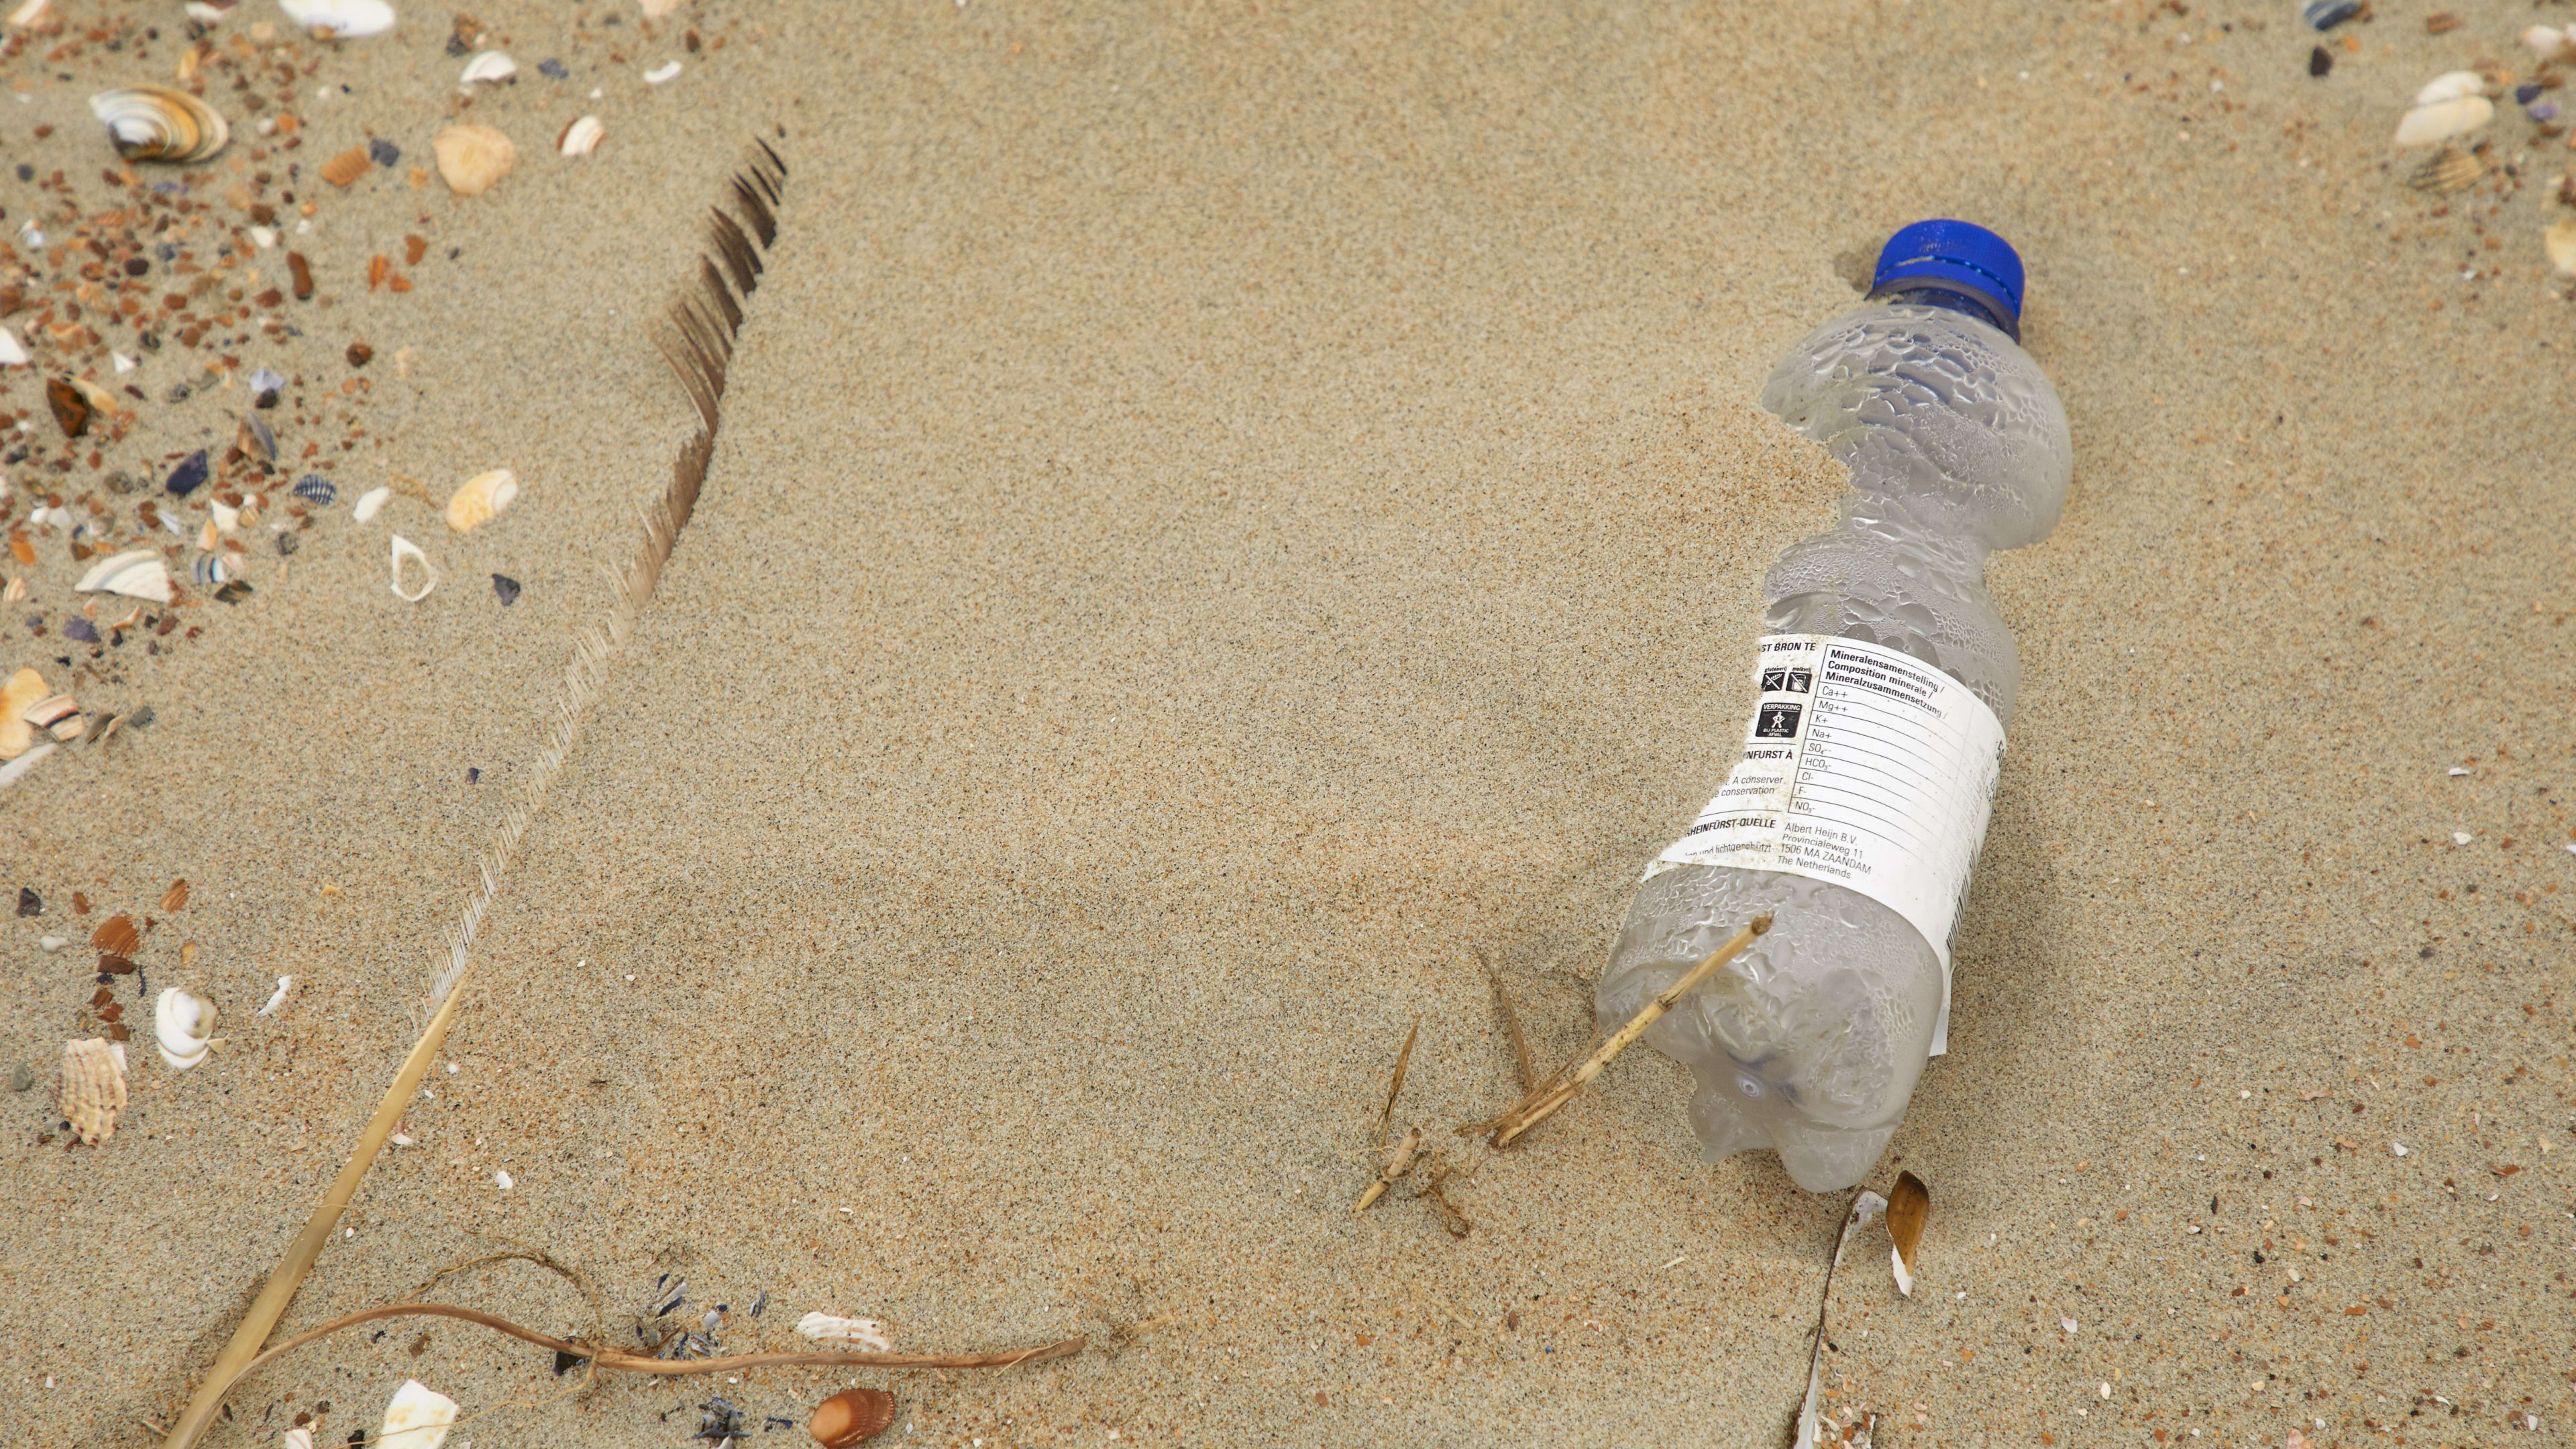 Nederlands onderzoek: 'Bijna honderd keer minder plastic in oceaan dan gedacht'